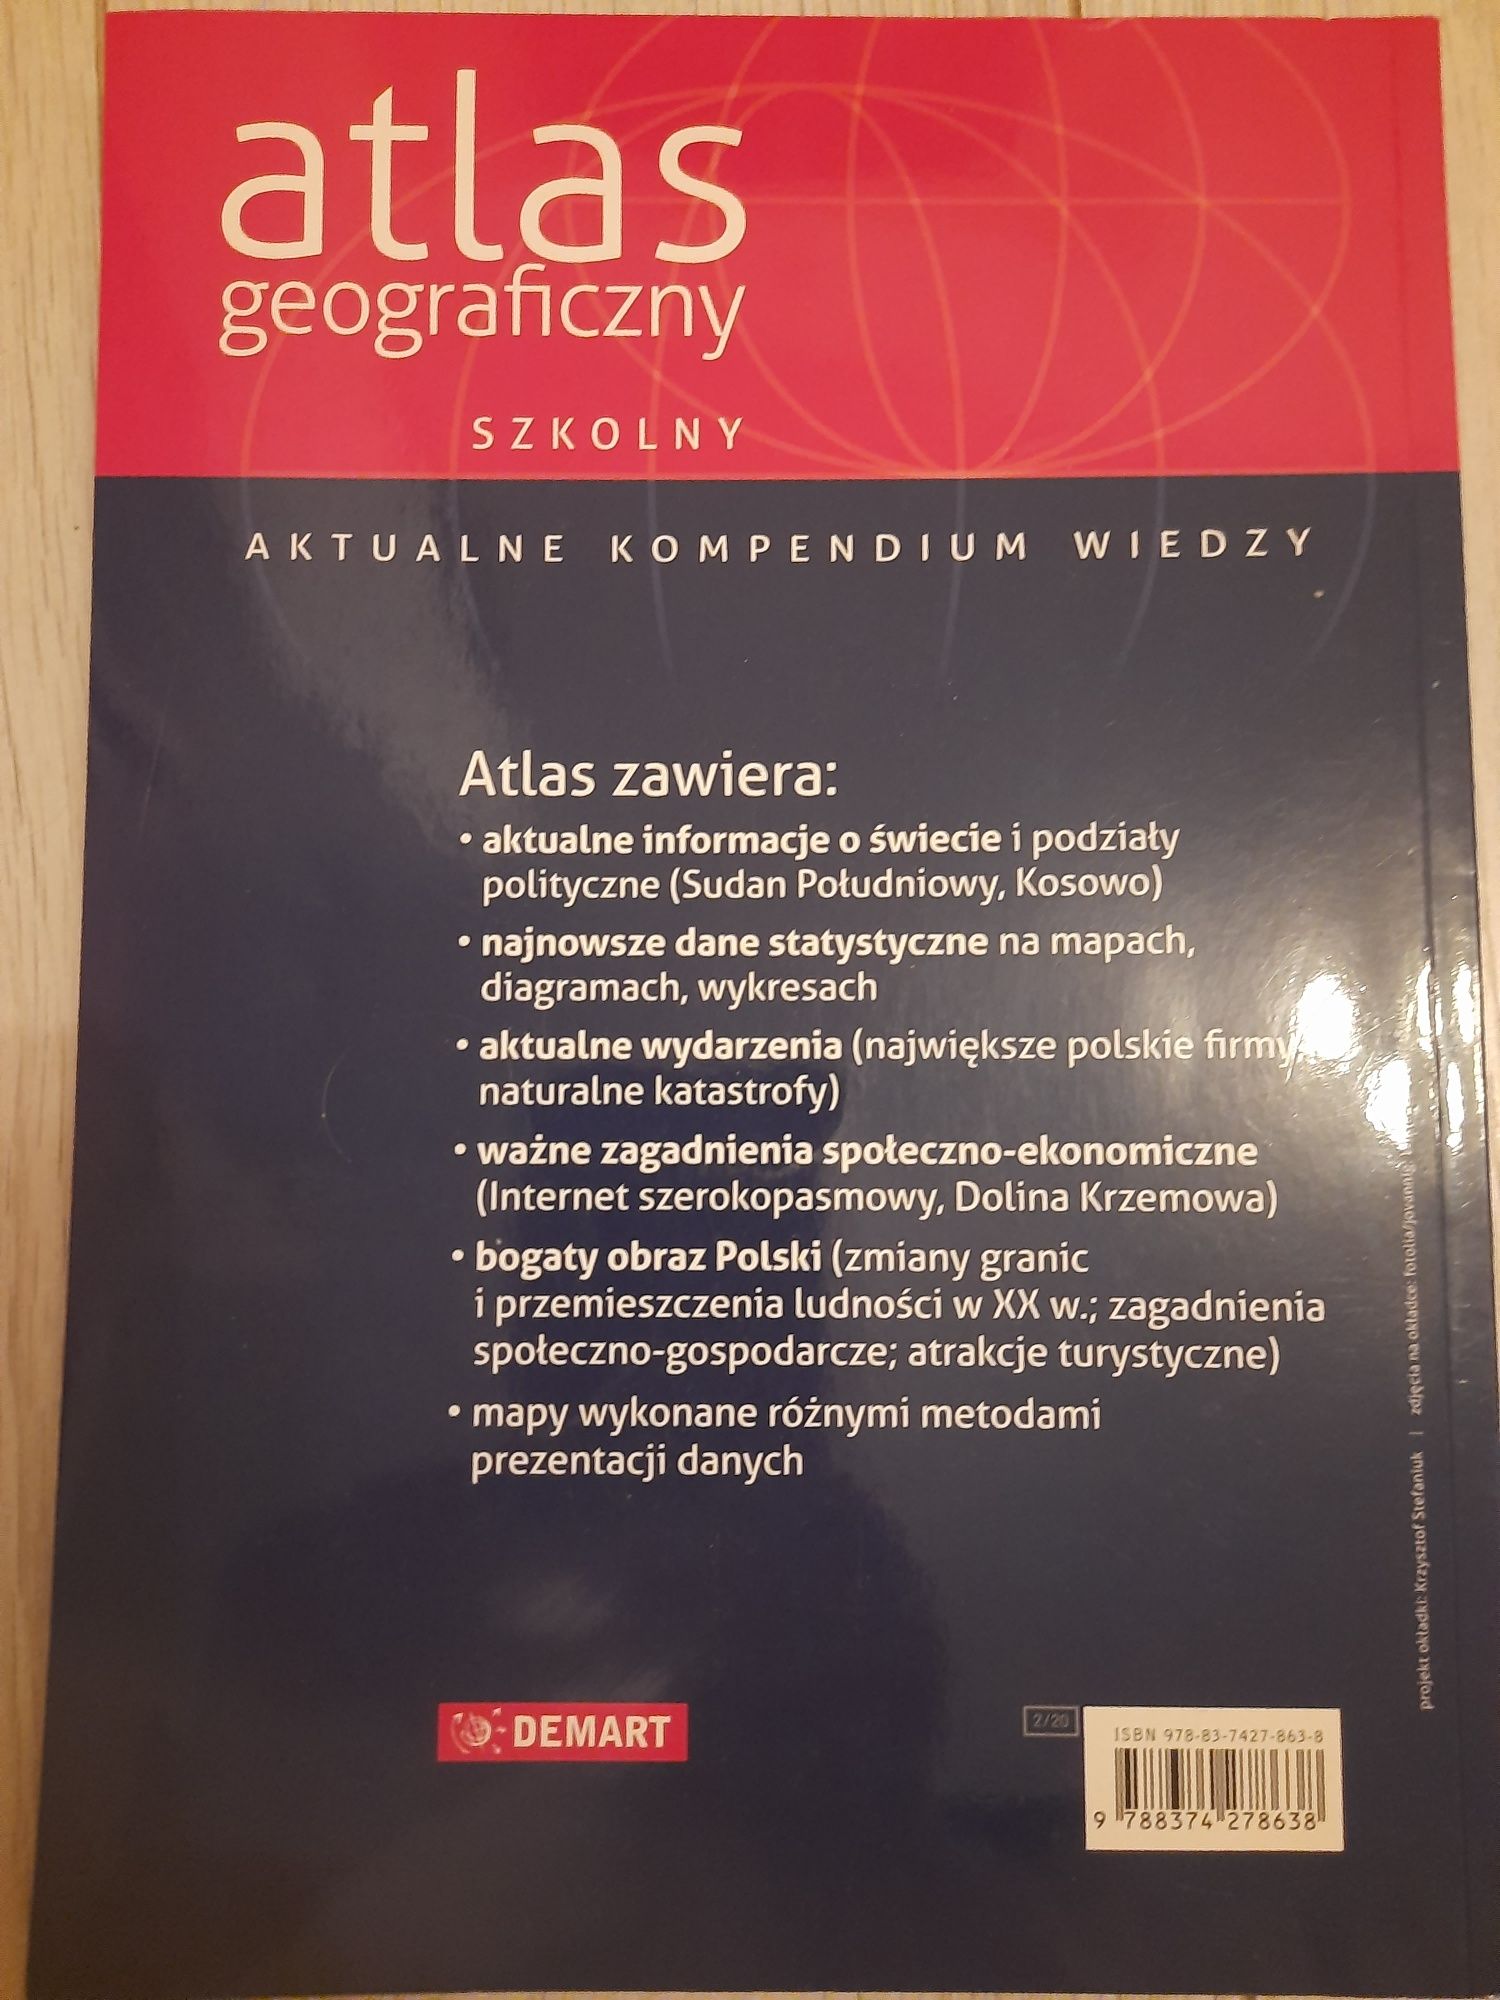 Atlas geograficzny szkolny